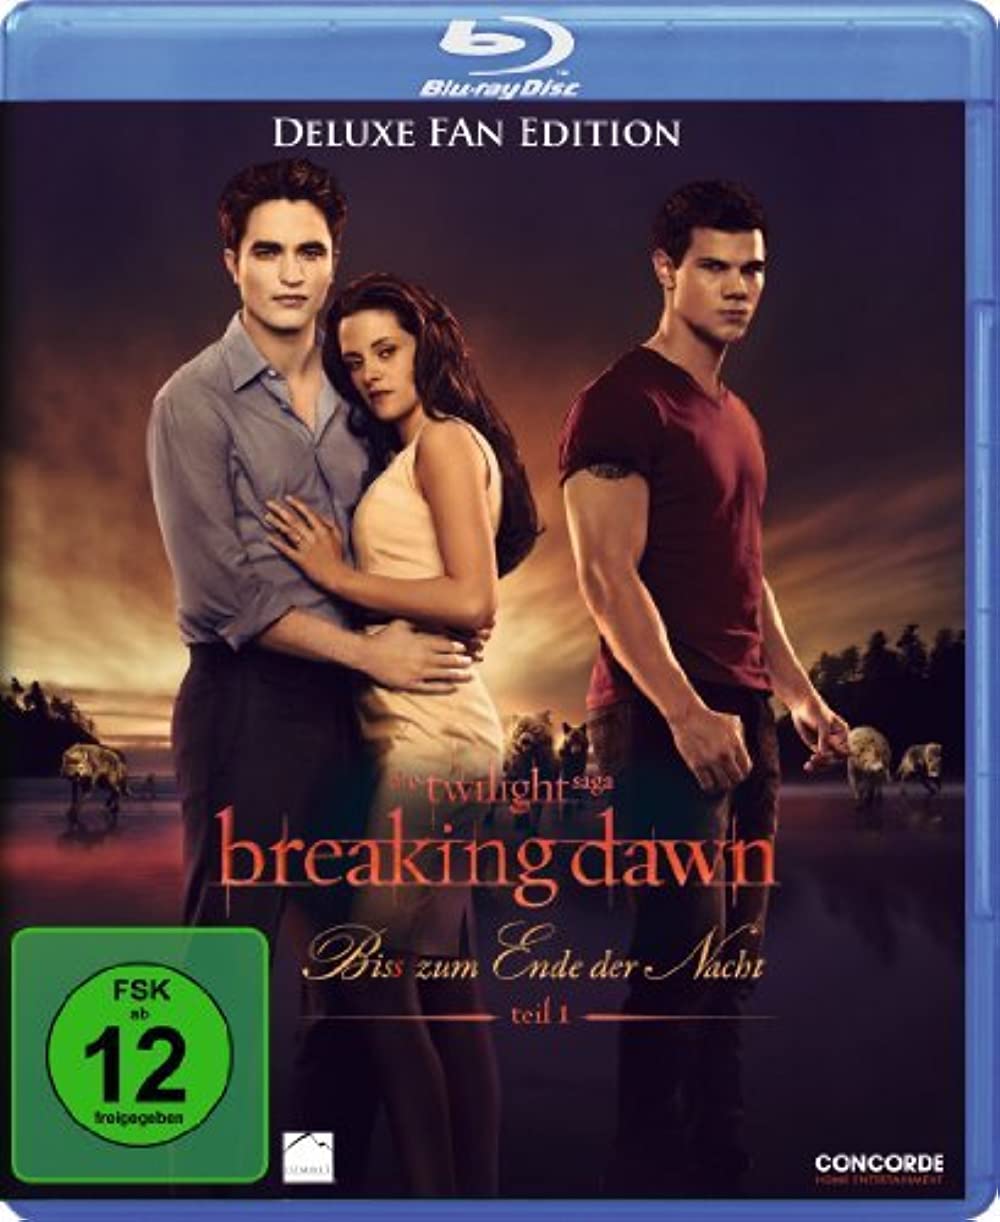 Filmbeschreibung zu Breaking Dawn - Bis(s) zum Ende der Nacht (Teil 1)